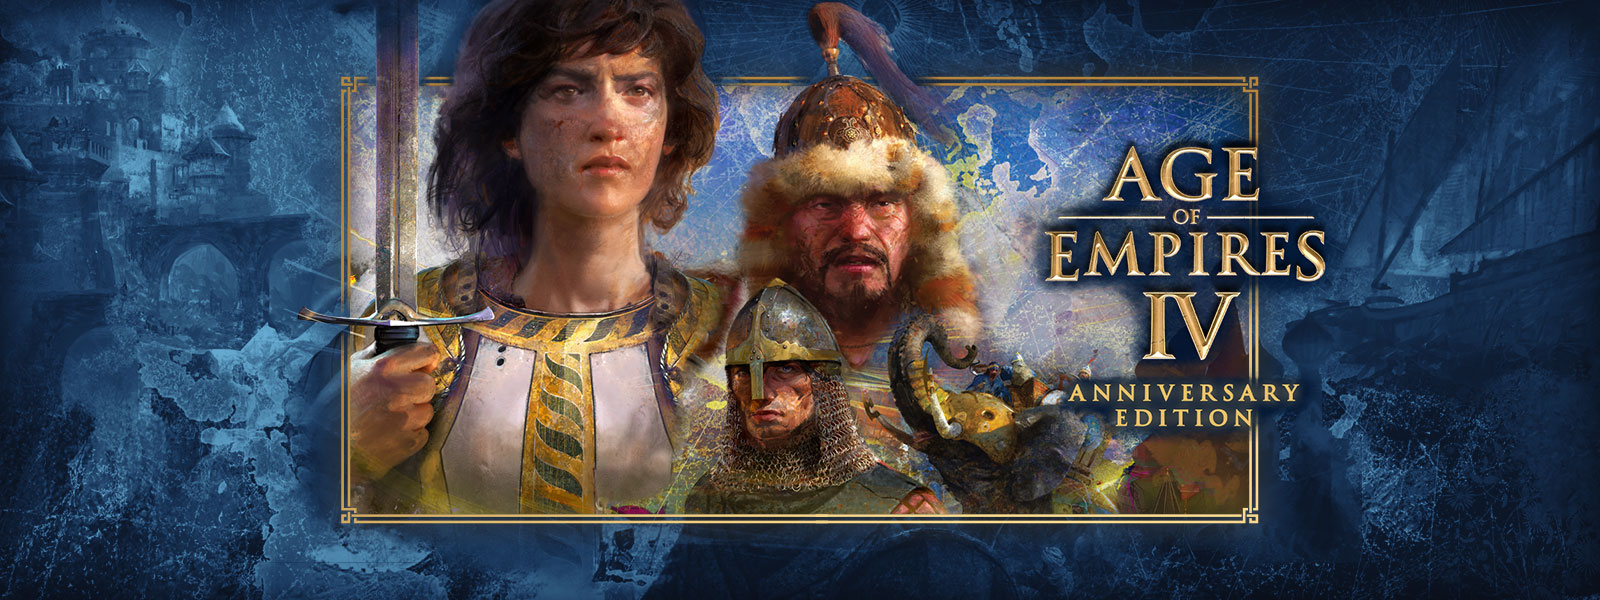 Age of Empires IV: Anniversary Edition. Trzy postacie w sceneriach wojennych i opancerzonymi słoniami wokół nich.